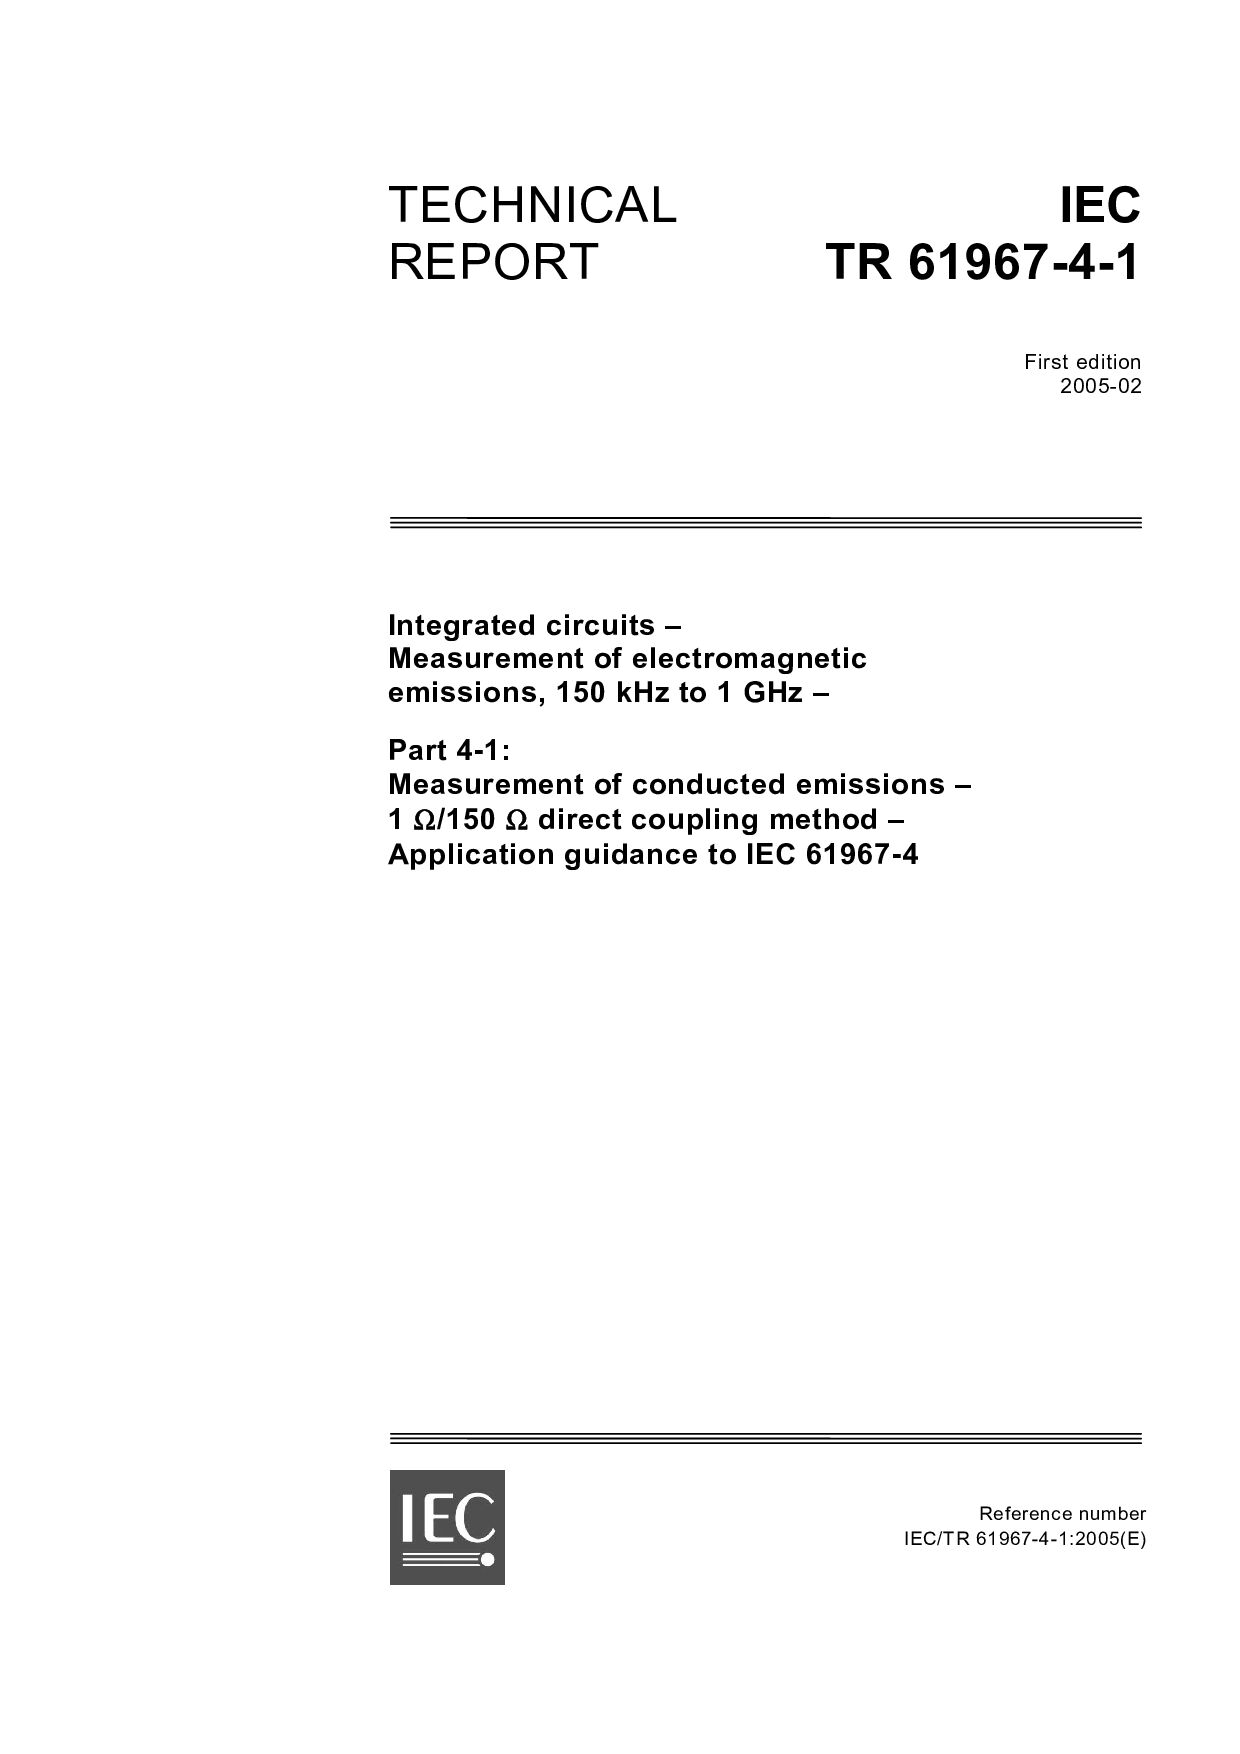 IEC TR 61967-4-1:2005封面图